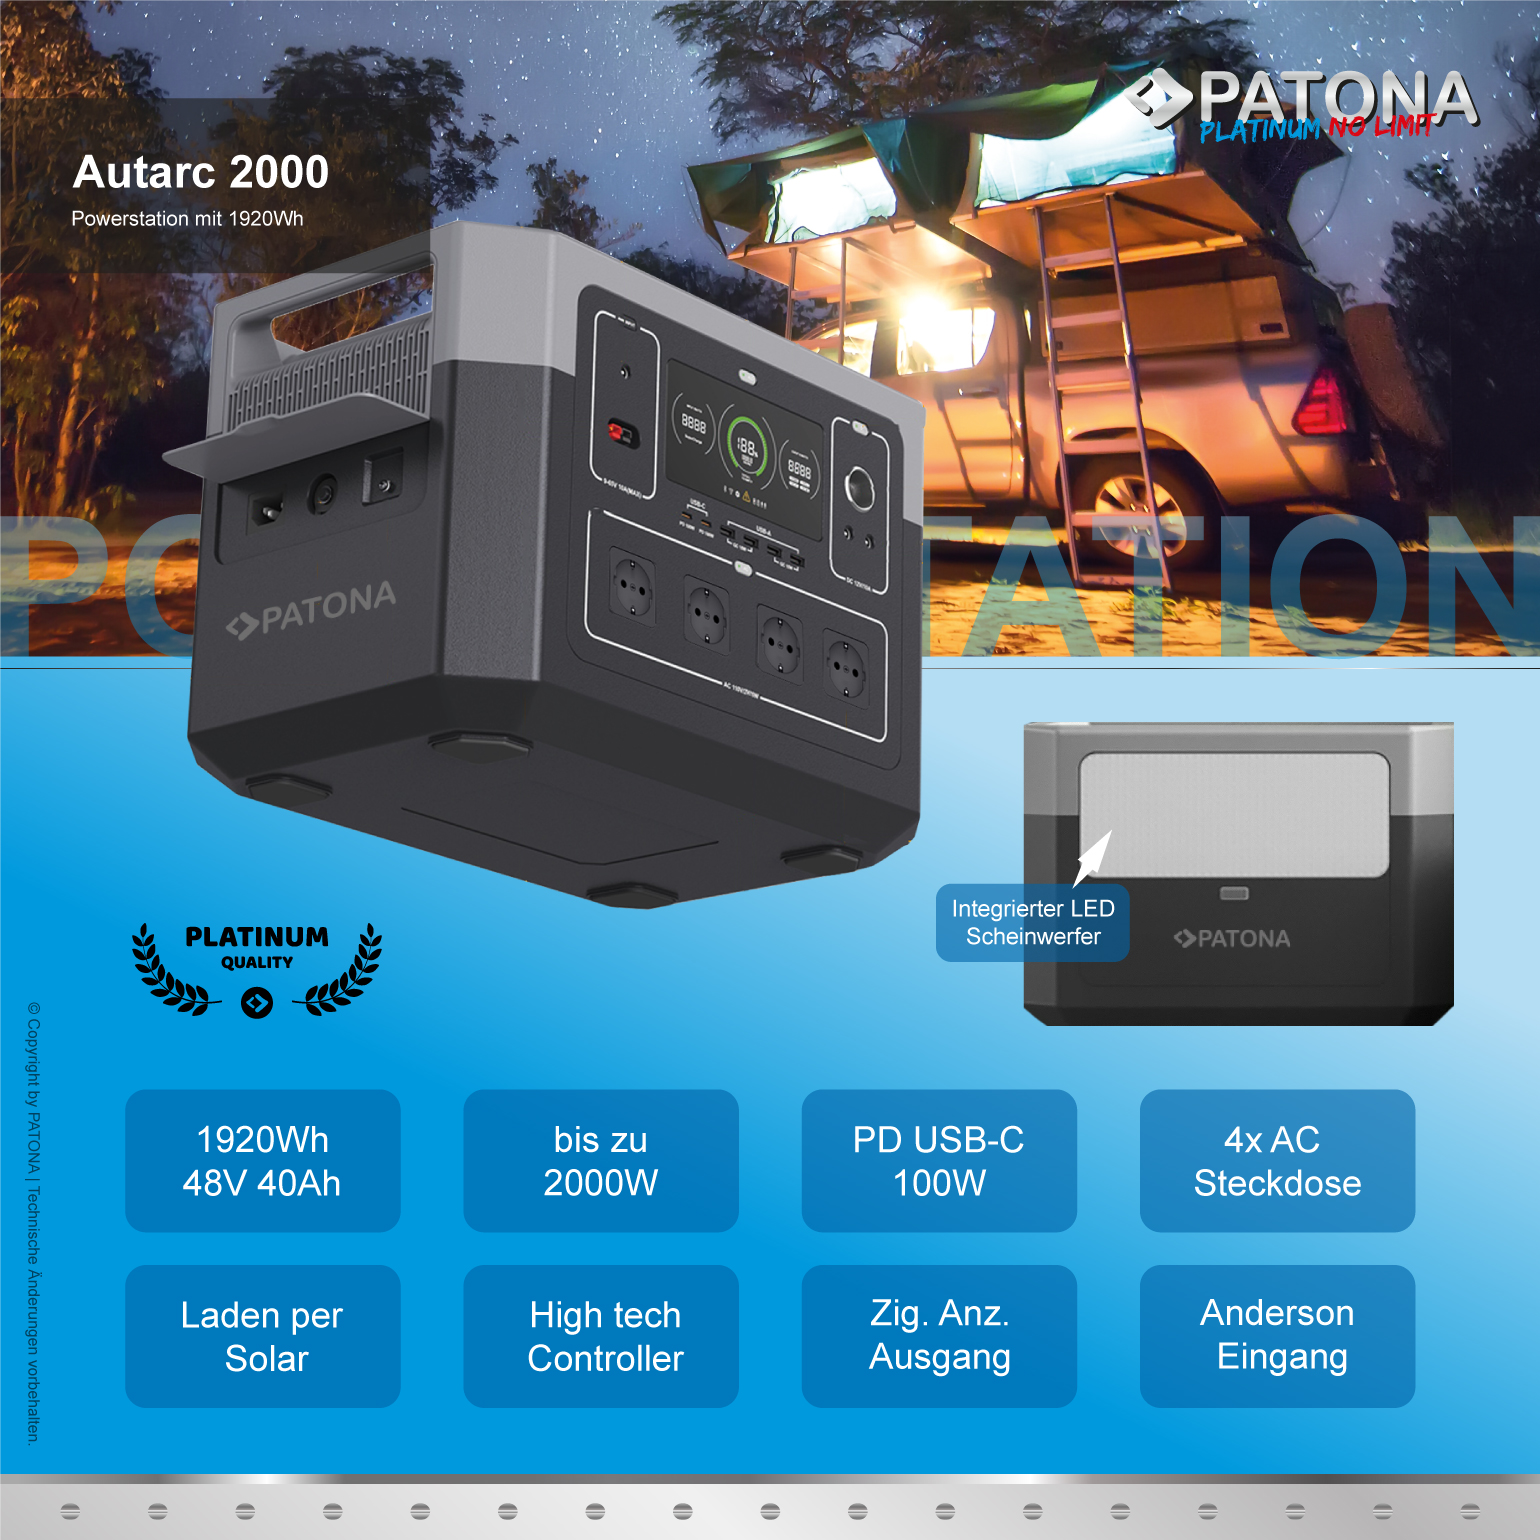 PD100W 1920Wh grau 2000W 2000W / PATONA / schwarz Autarc Powerstation 2000